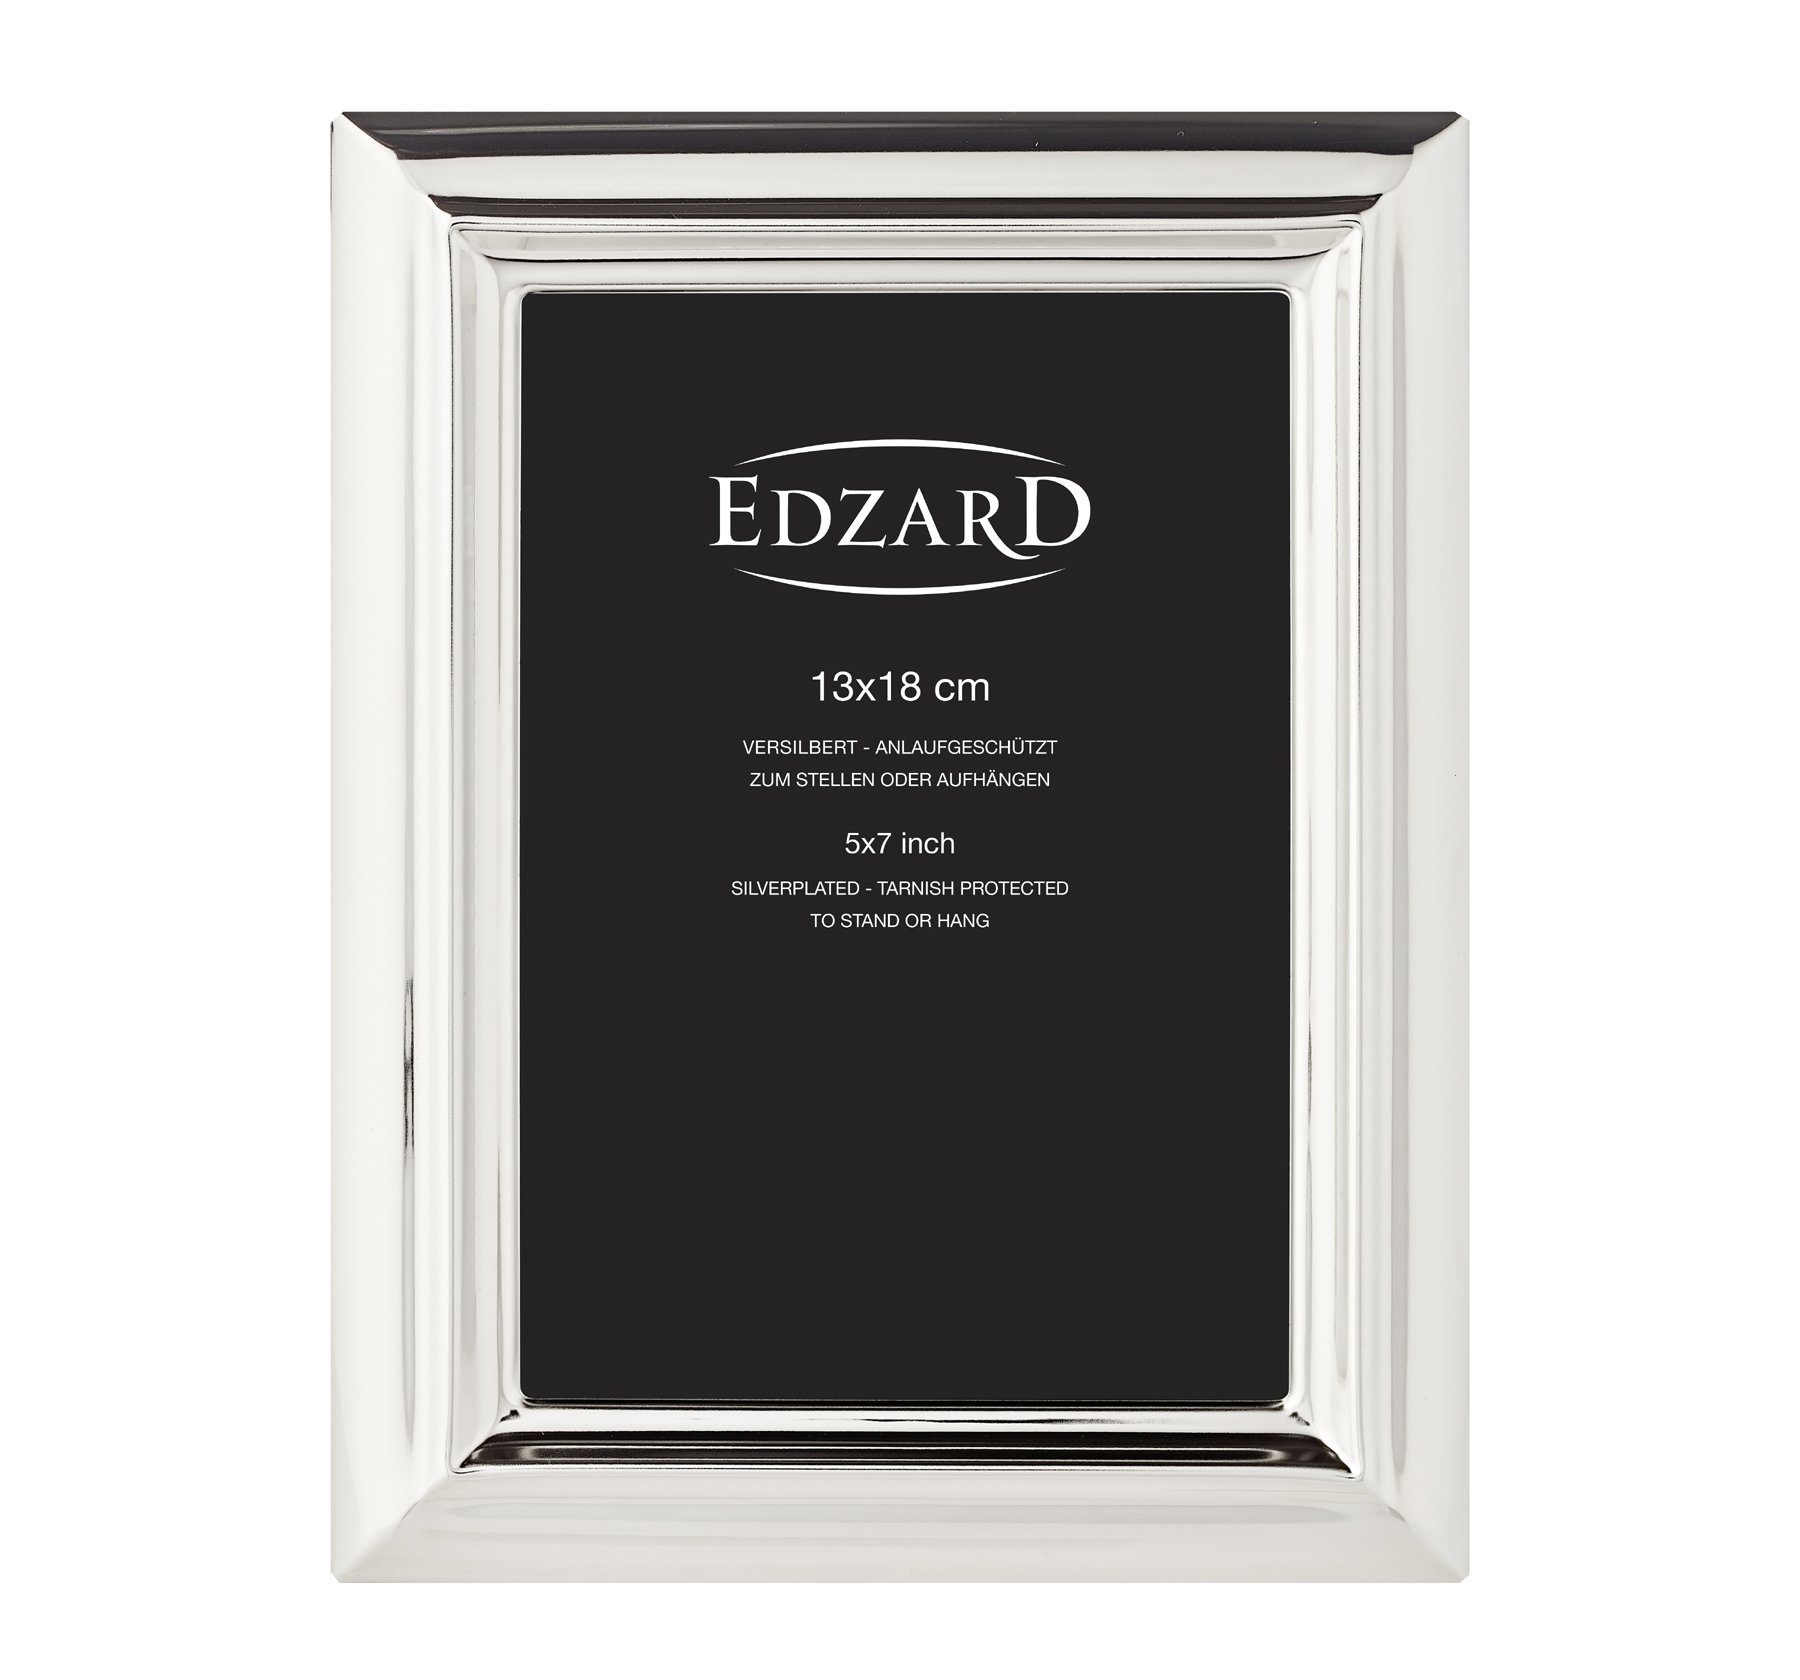 EDZARD Bilderrahmen Florenz, versilbert cm 13x18 für 2er anlaufgeschützt, Set Foto und